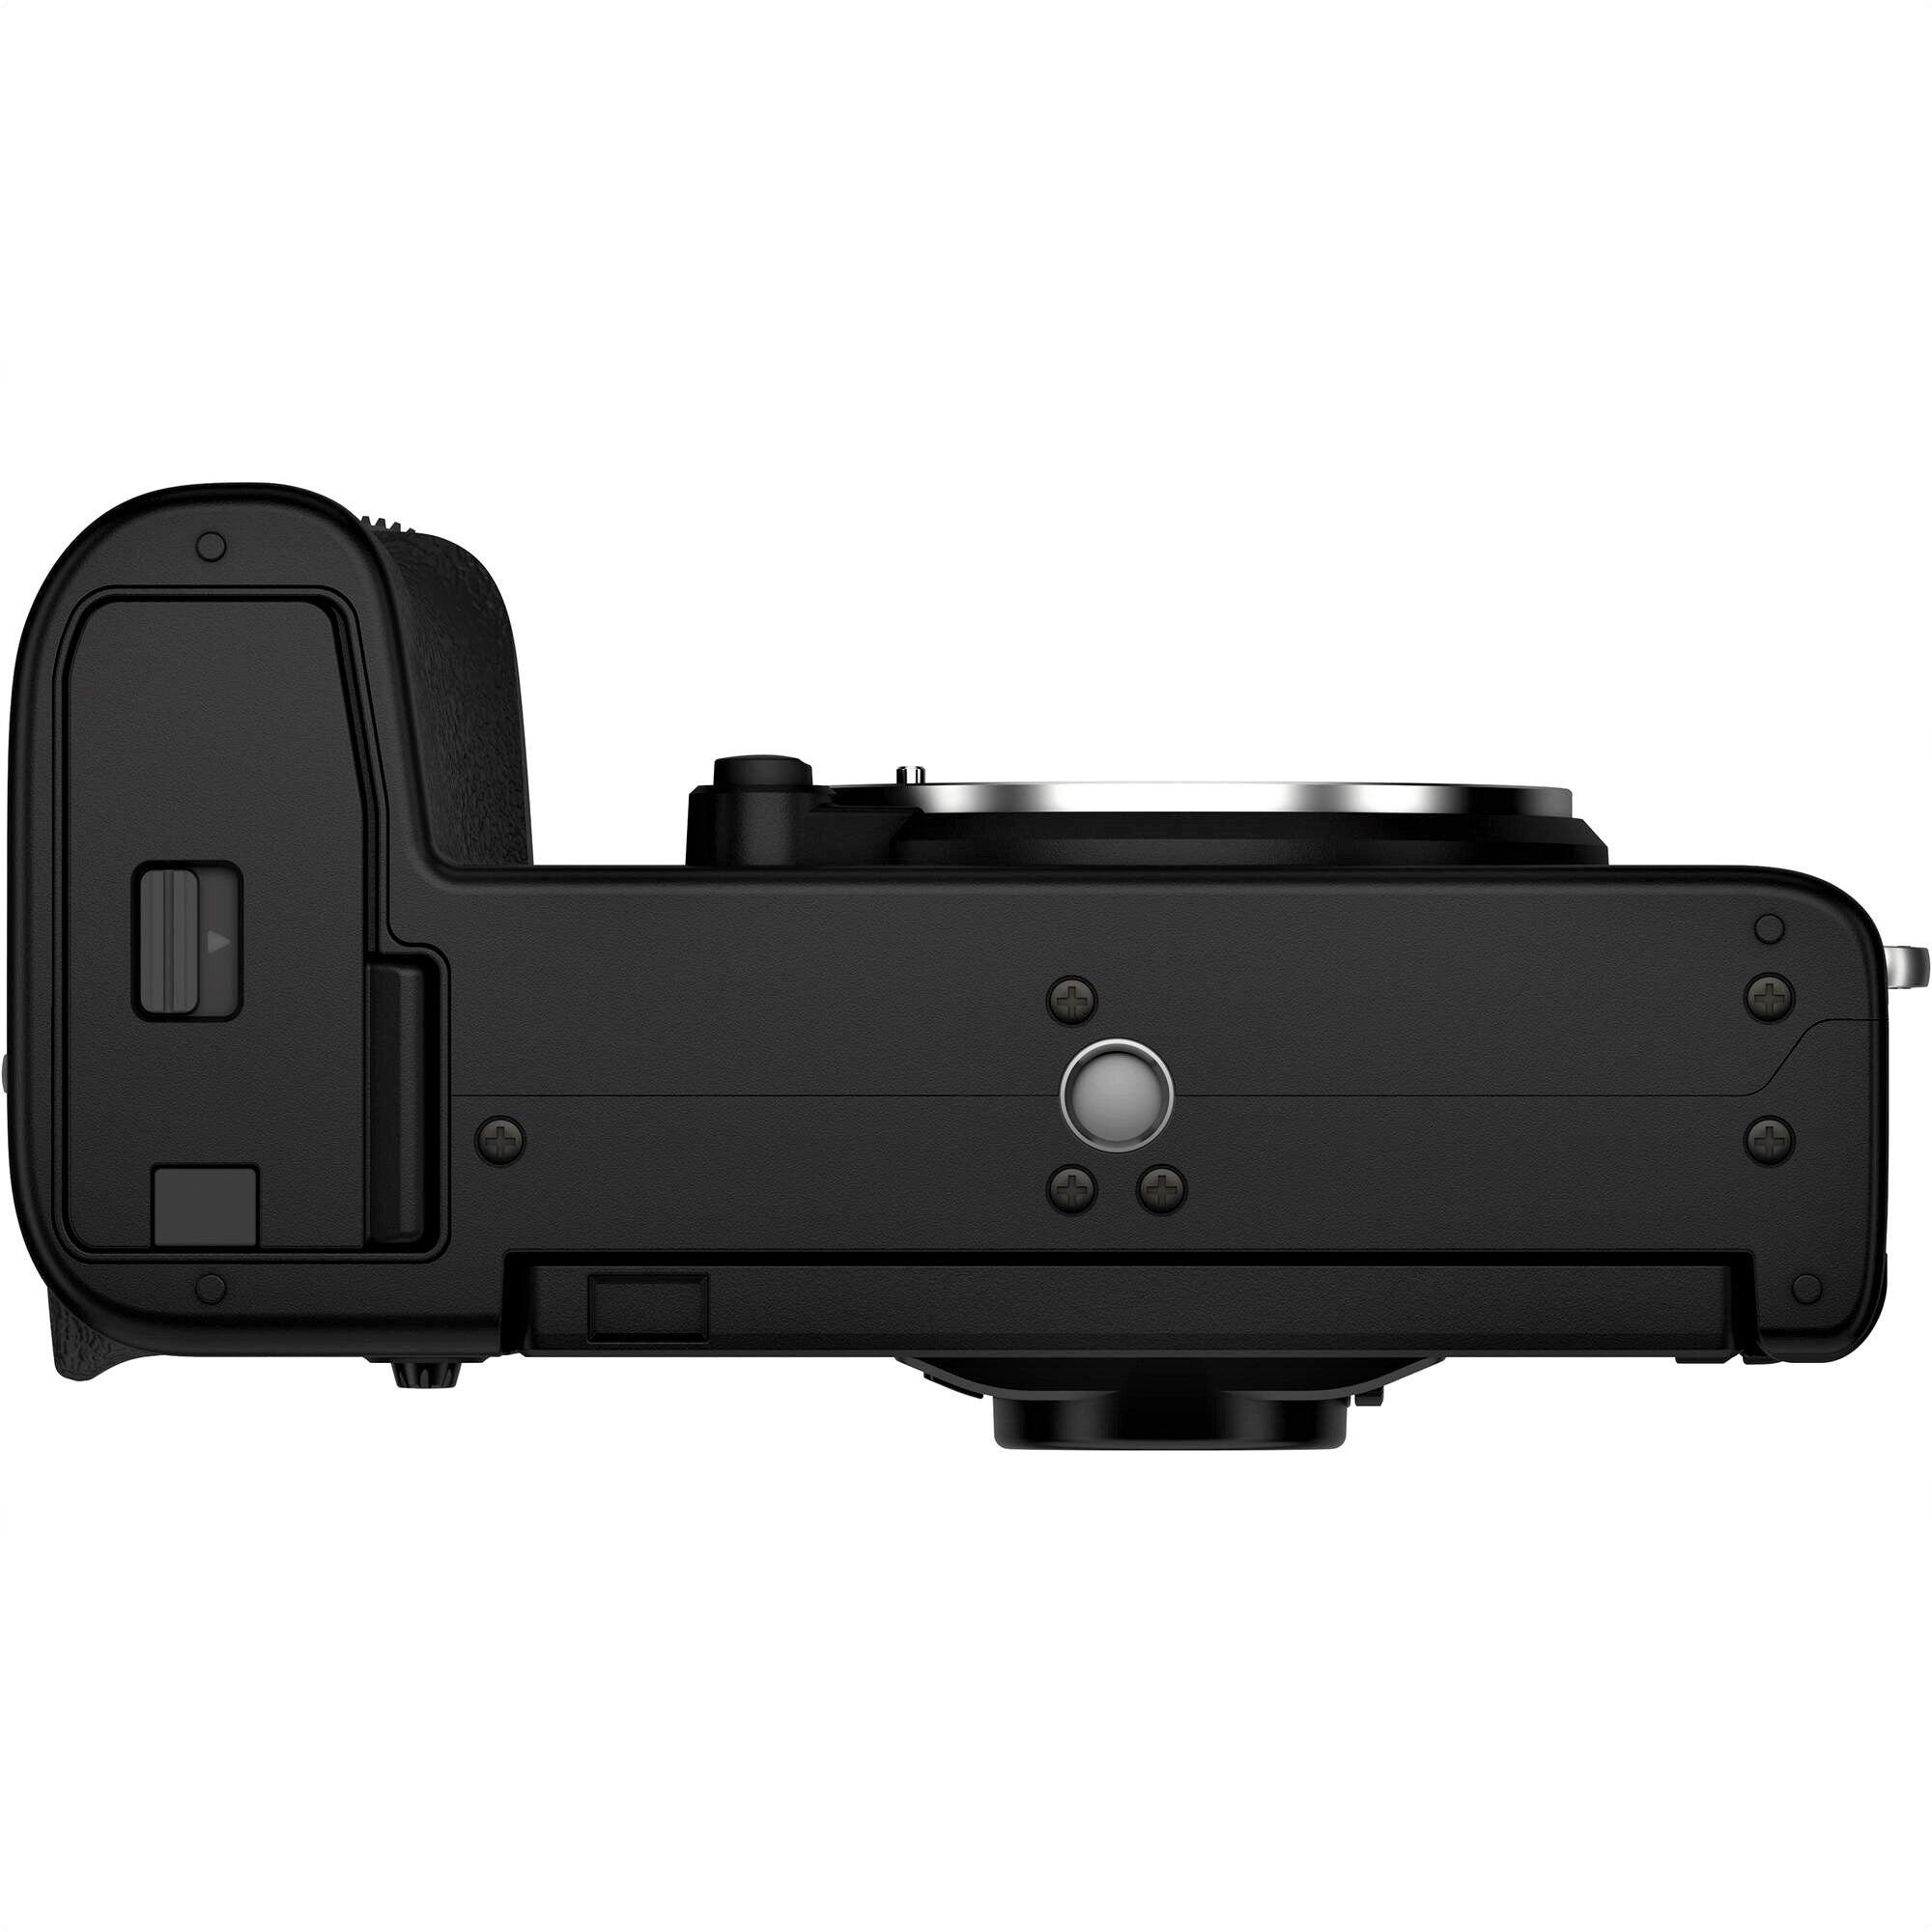 Fujifilm X-S10 Mirrorless Camera - Bottom View